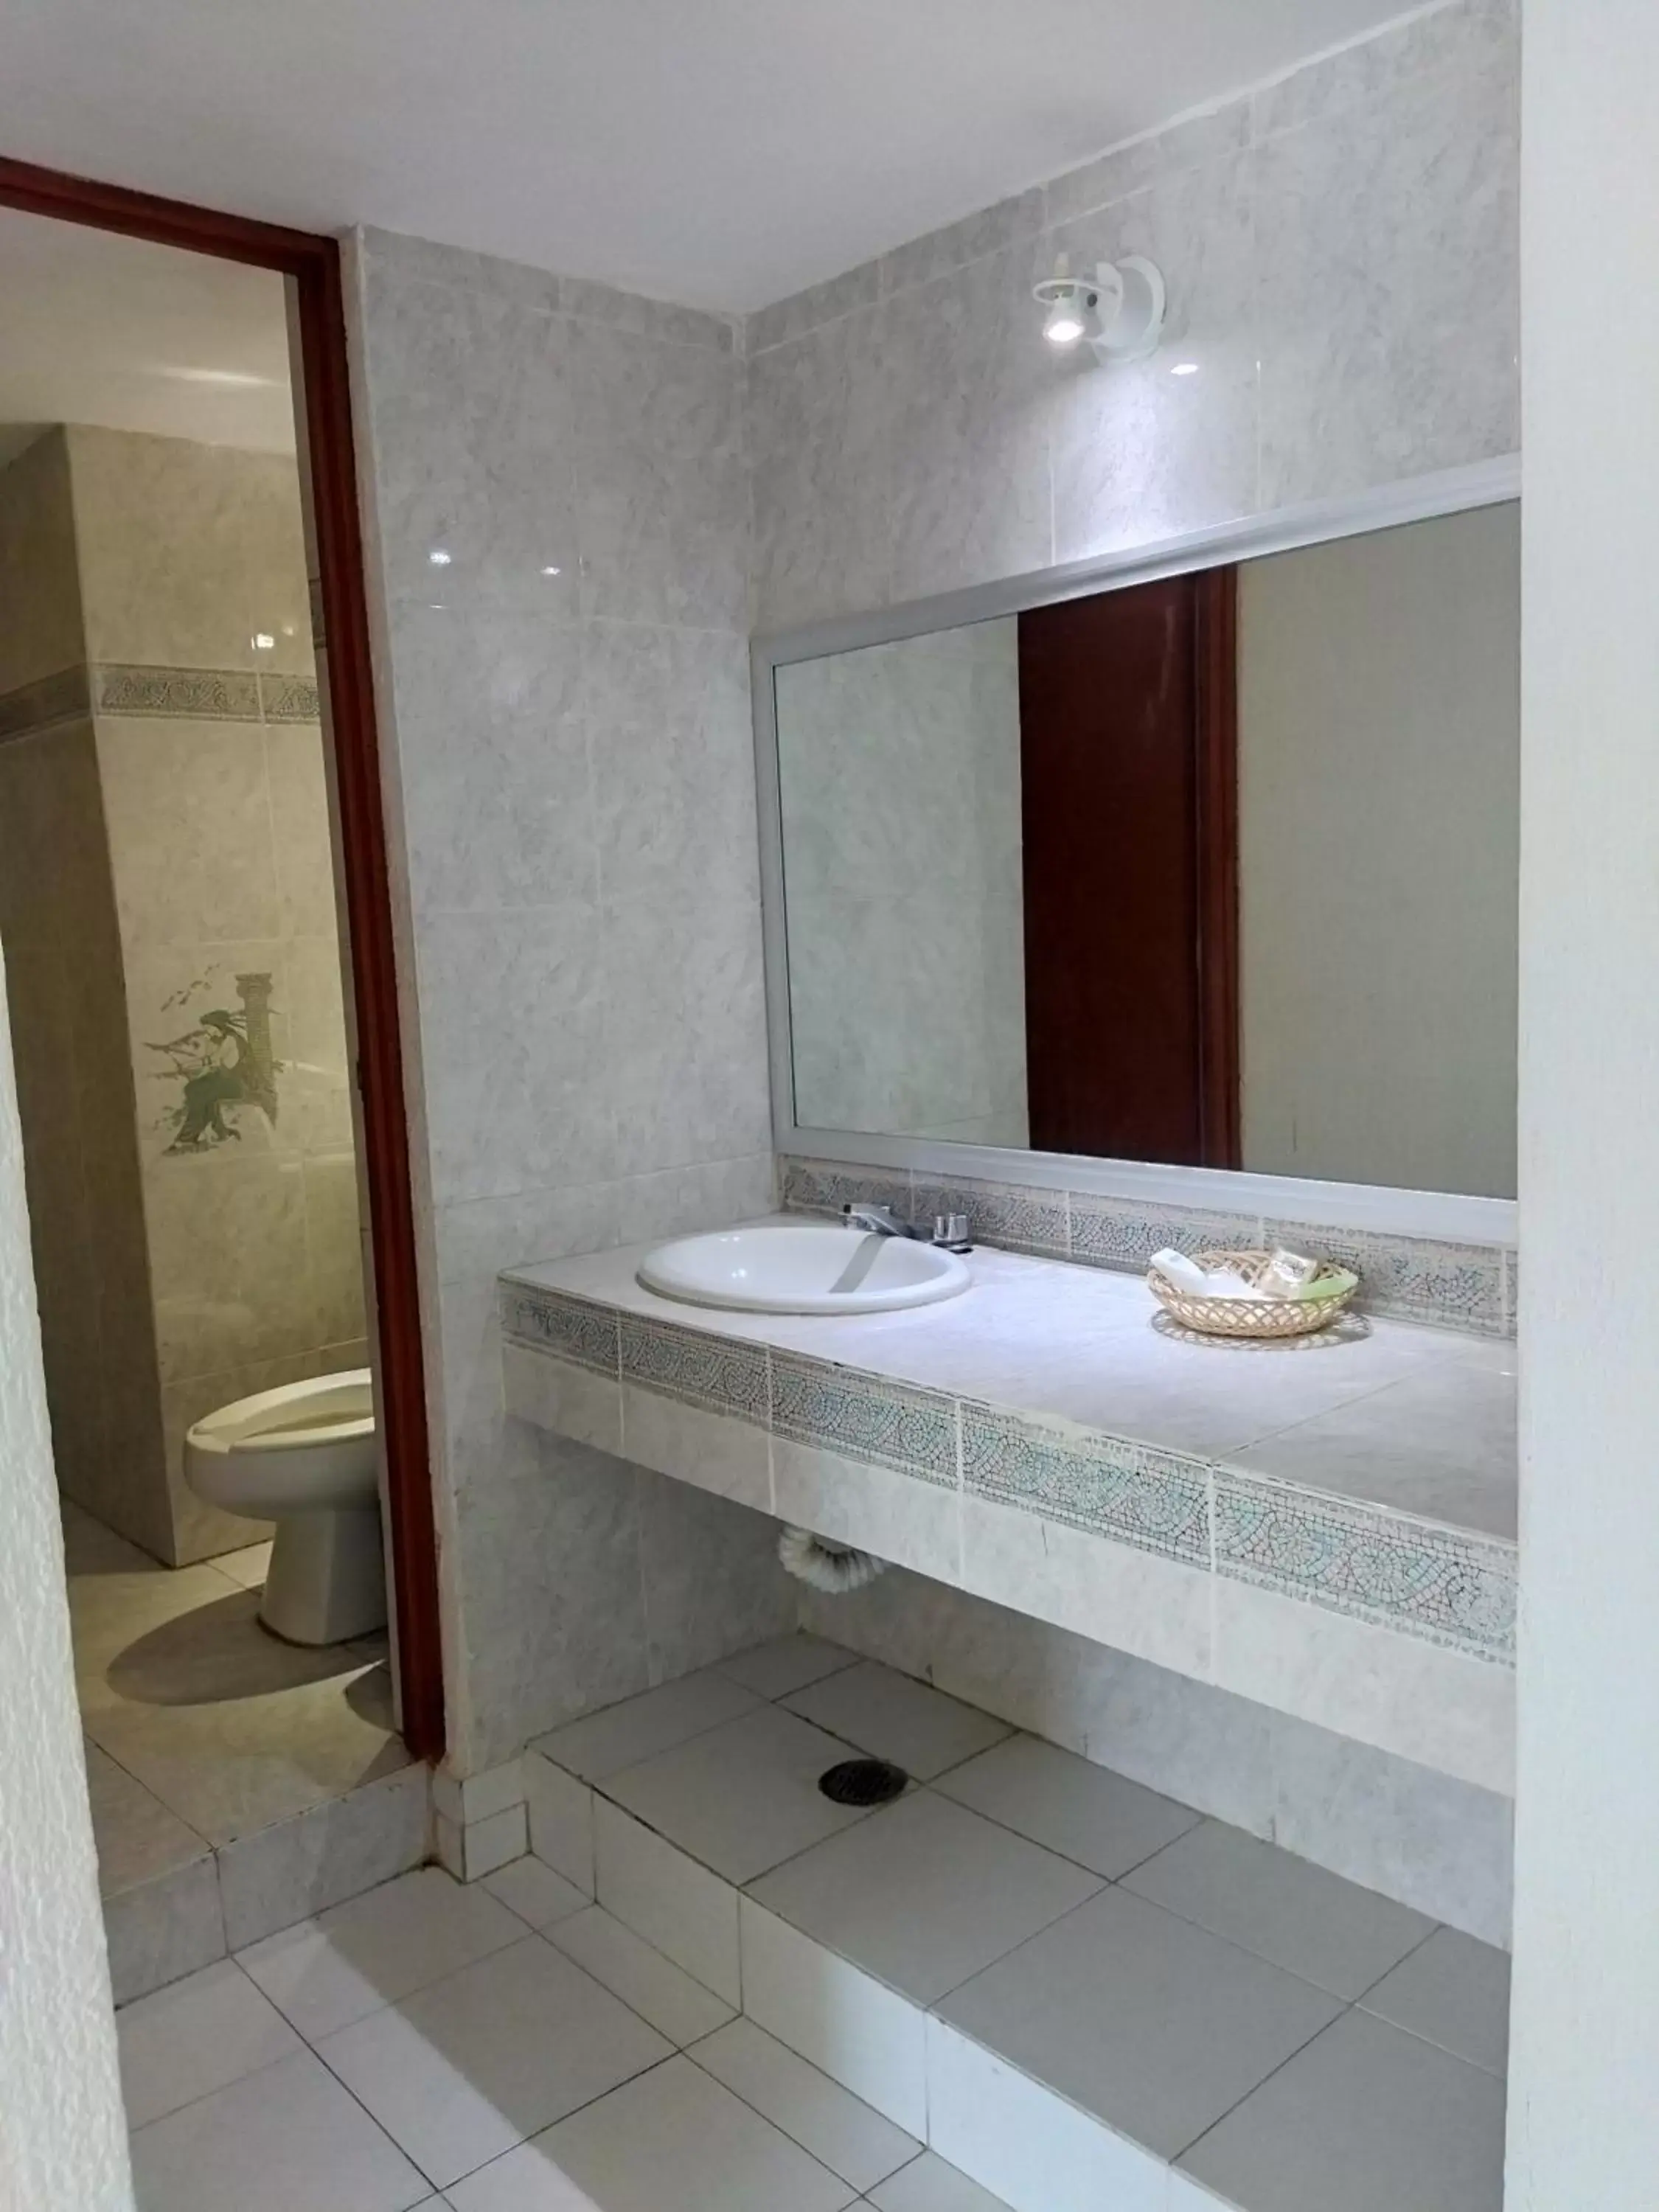 Bathroom in Hotel Aristos Acapulco